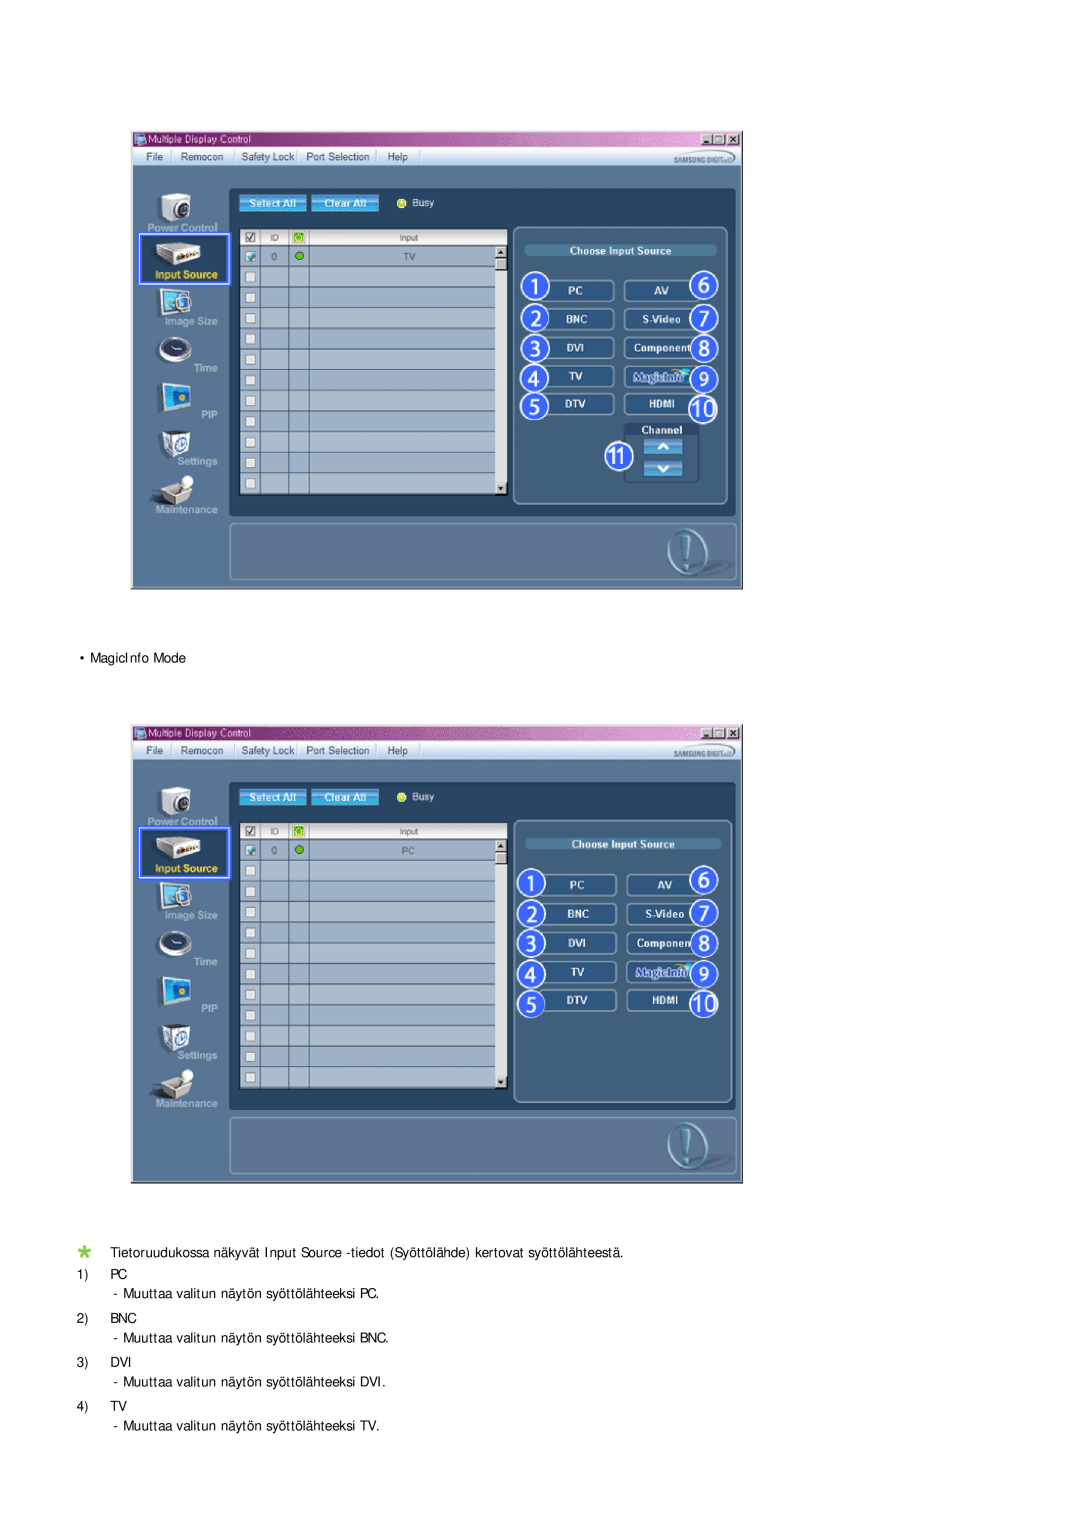 Samsung LH40TCQMBG/EN, LH40TCUMBG/EN, LH46TCUMBC/EN manual MagicInfo Mode, PC Muuttaa valitun näytön syöttölähteeksi PC 2 BNC 